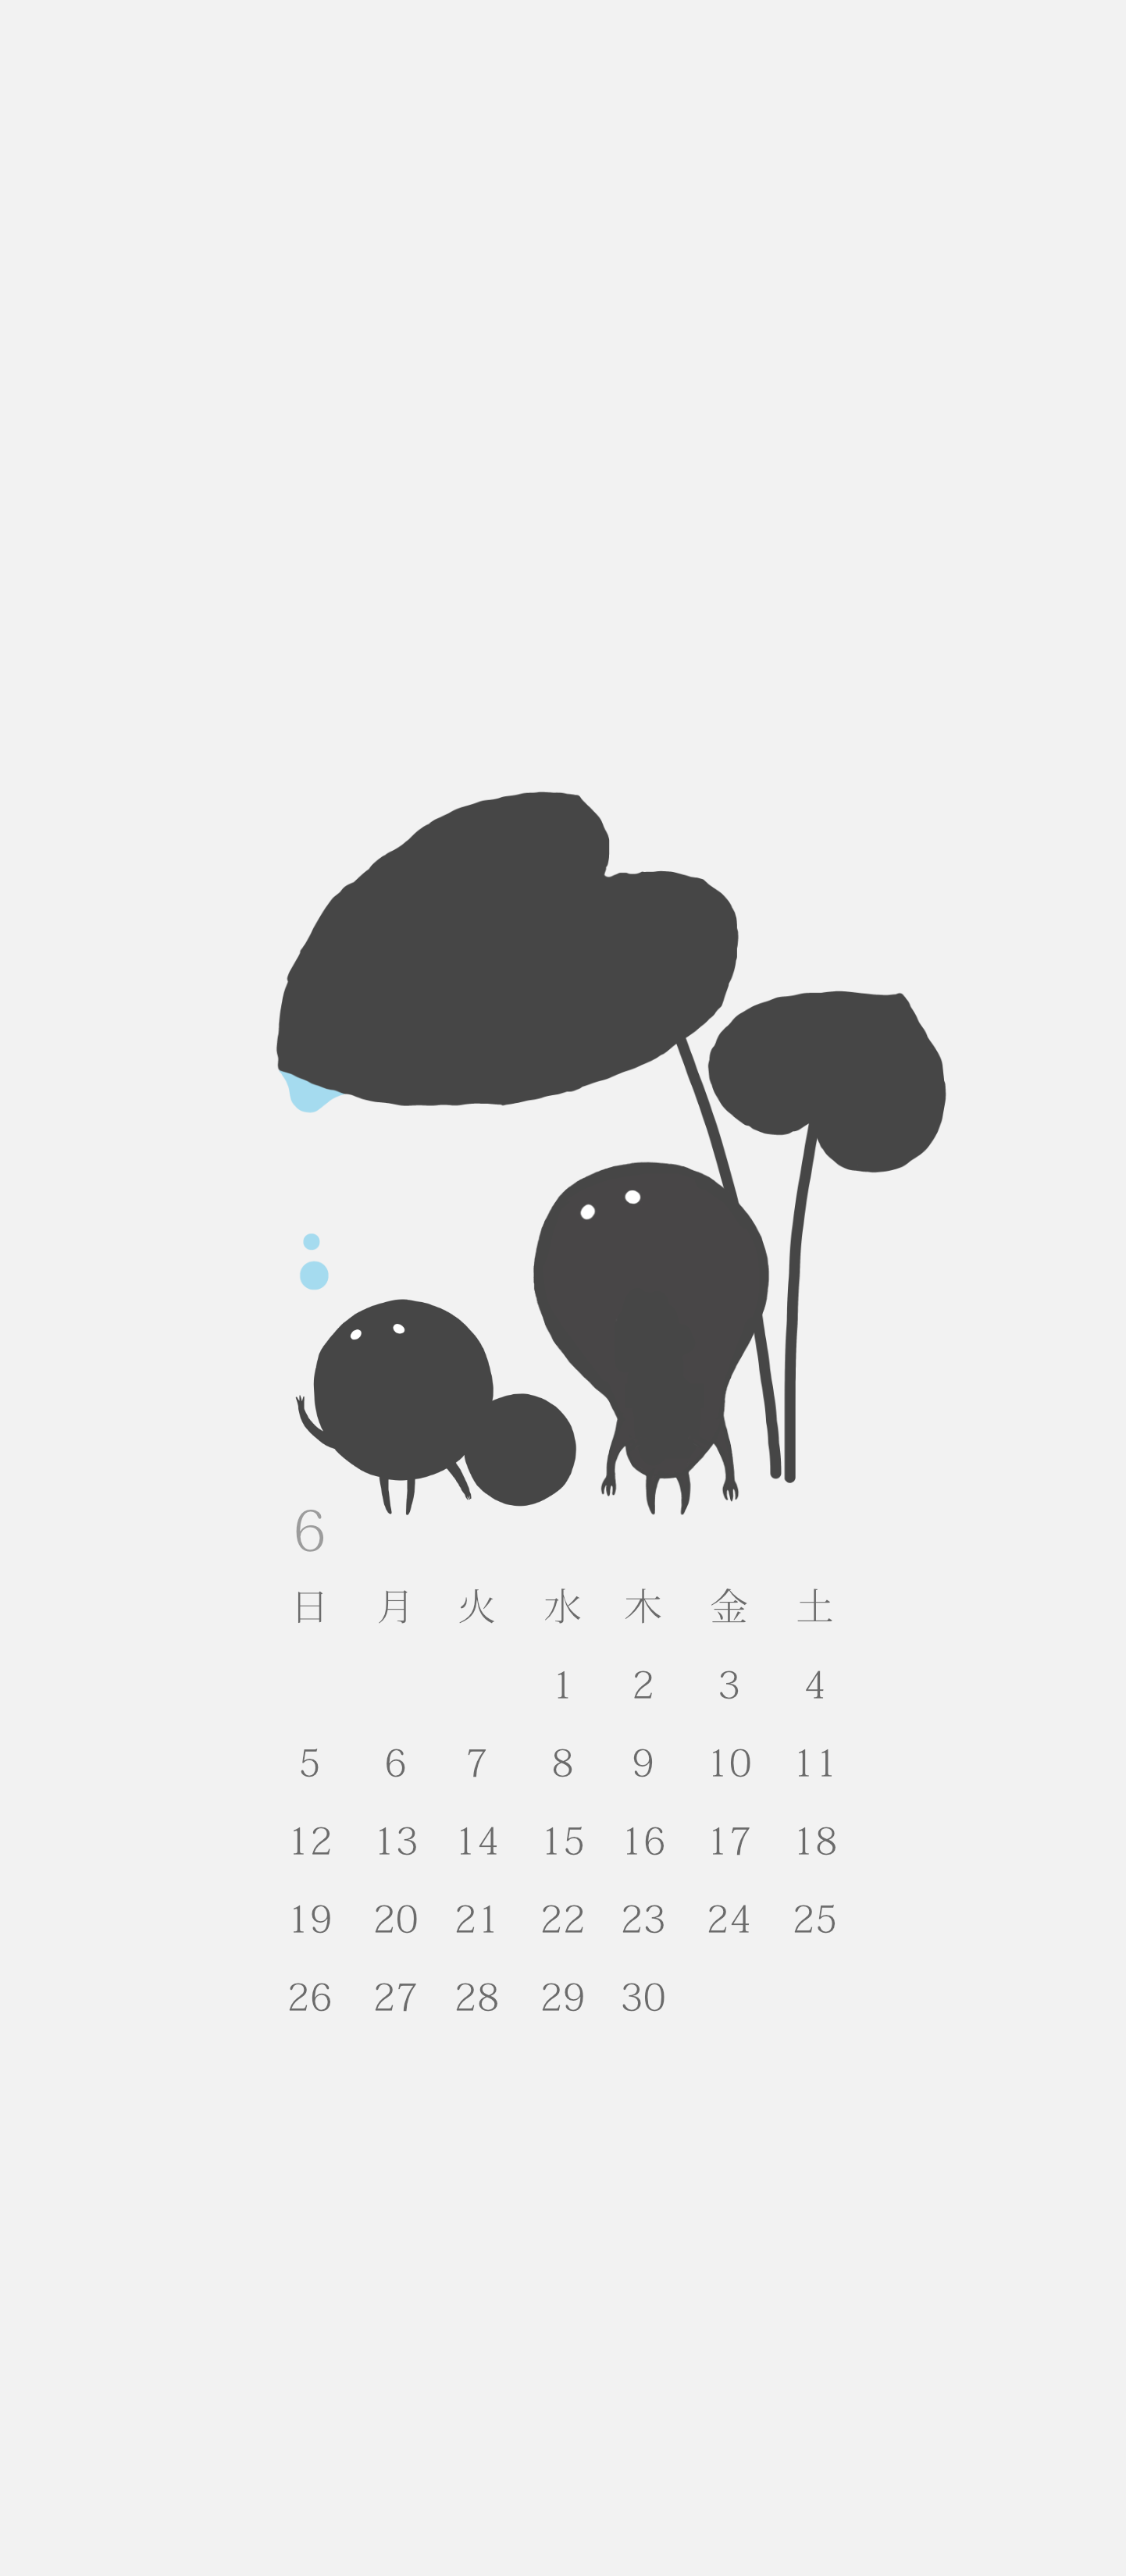 無料ロック画面カレンダー 「5月 雨宿り」